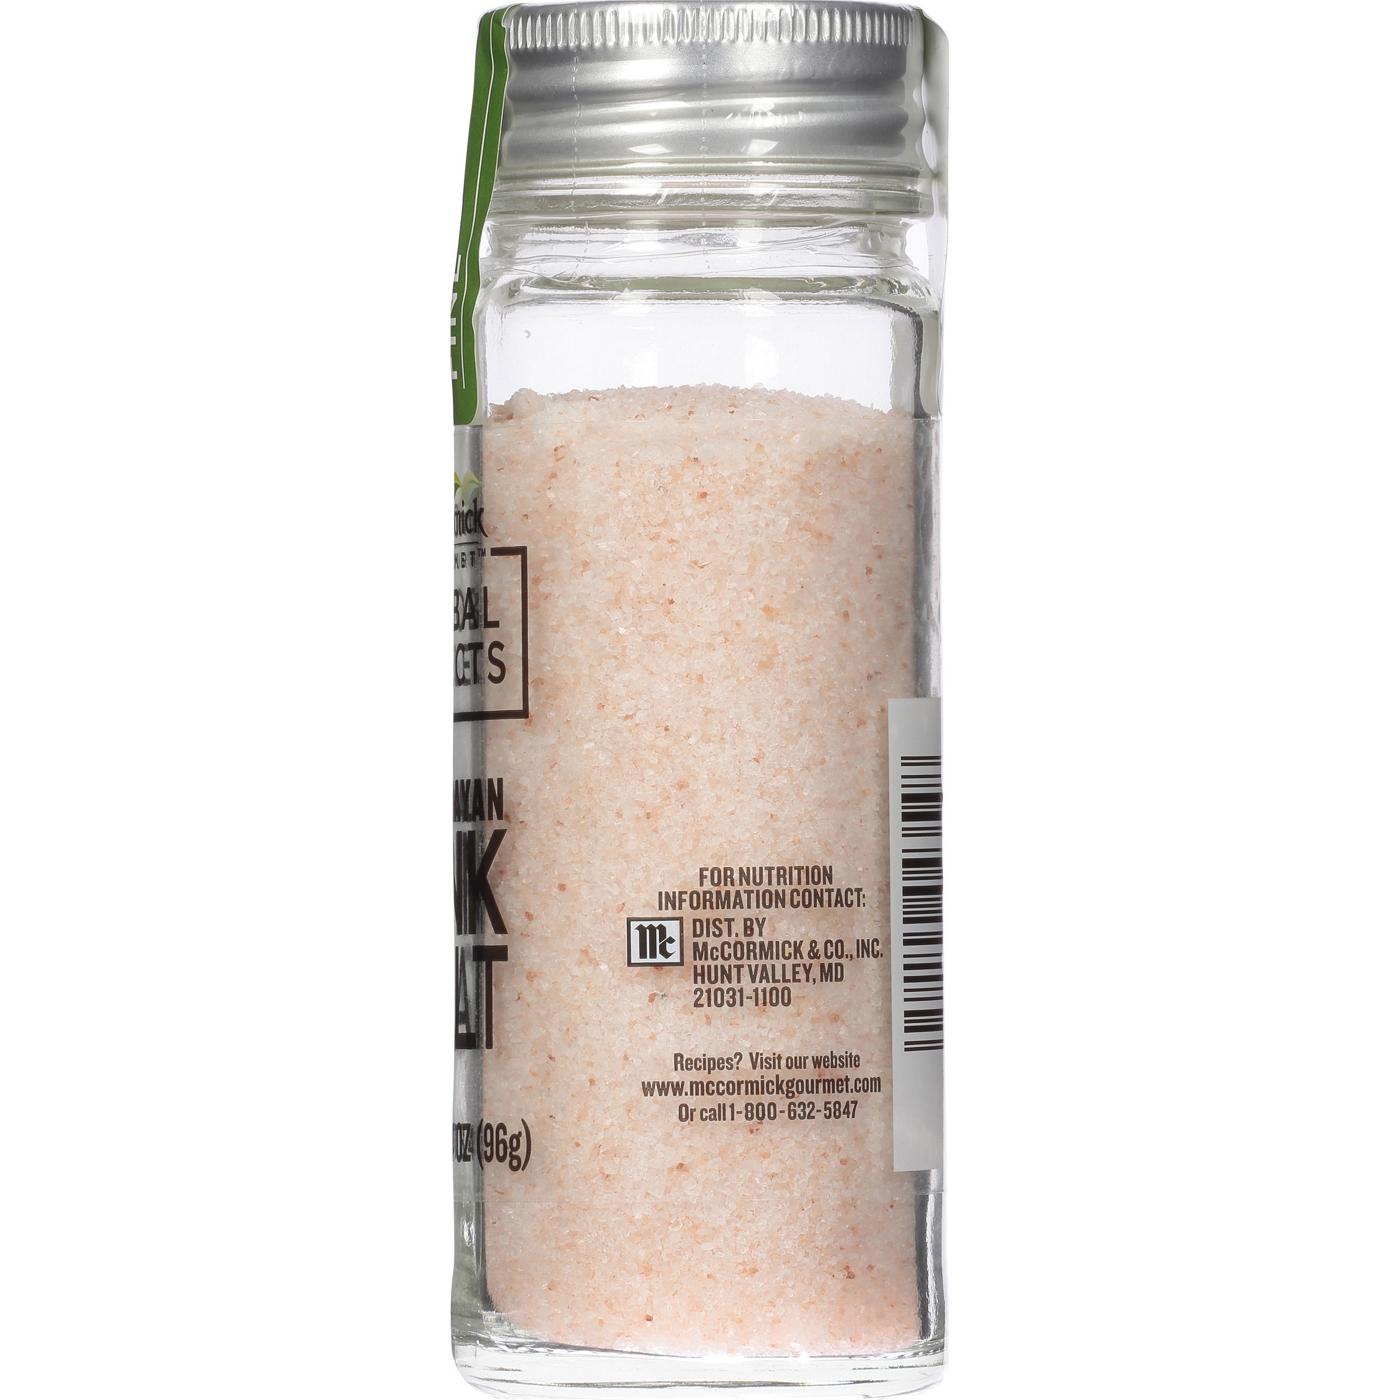 McCormick® Himalayan Pink Salt Grinder